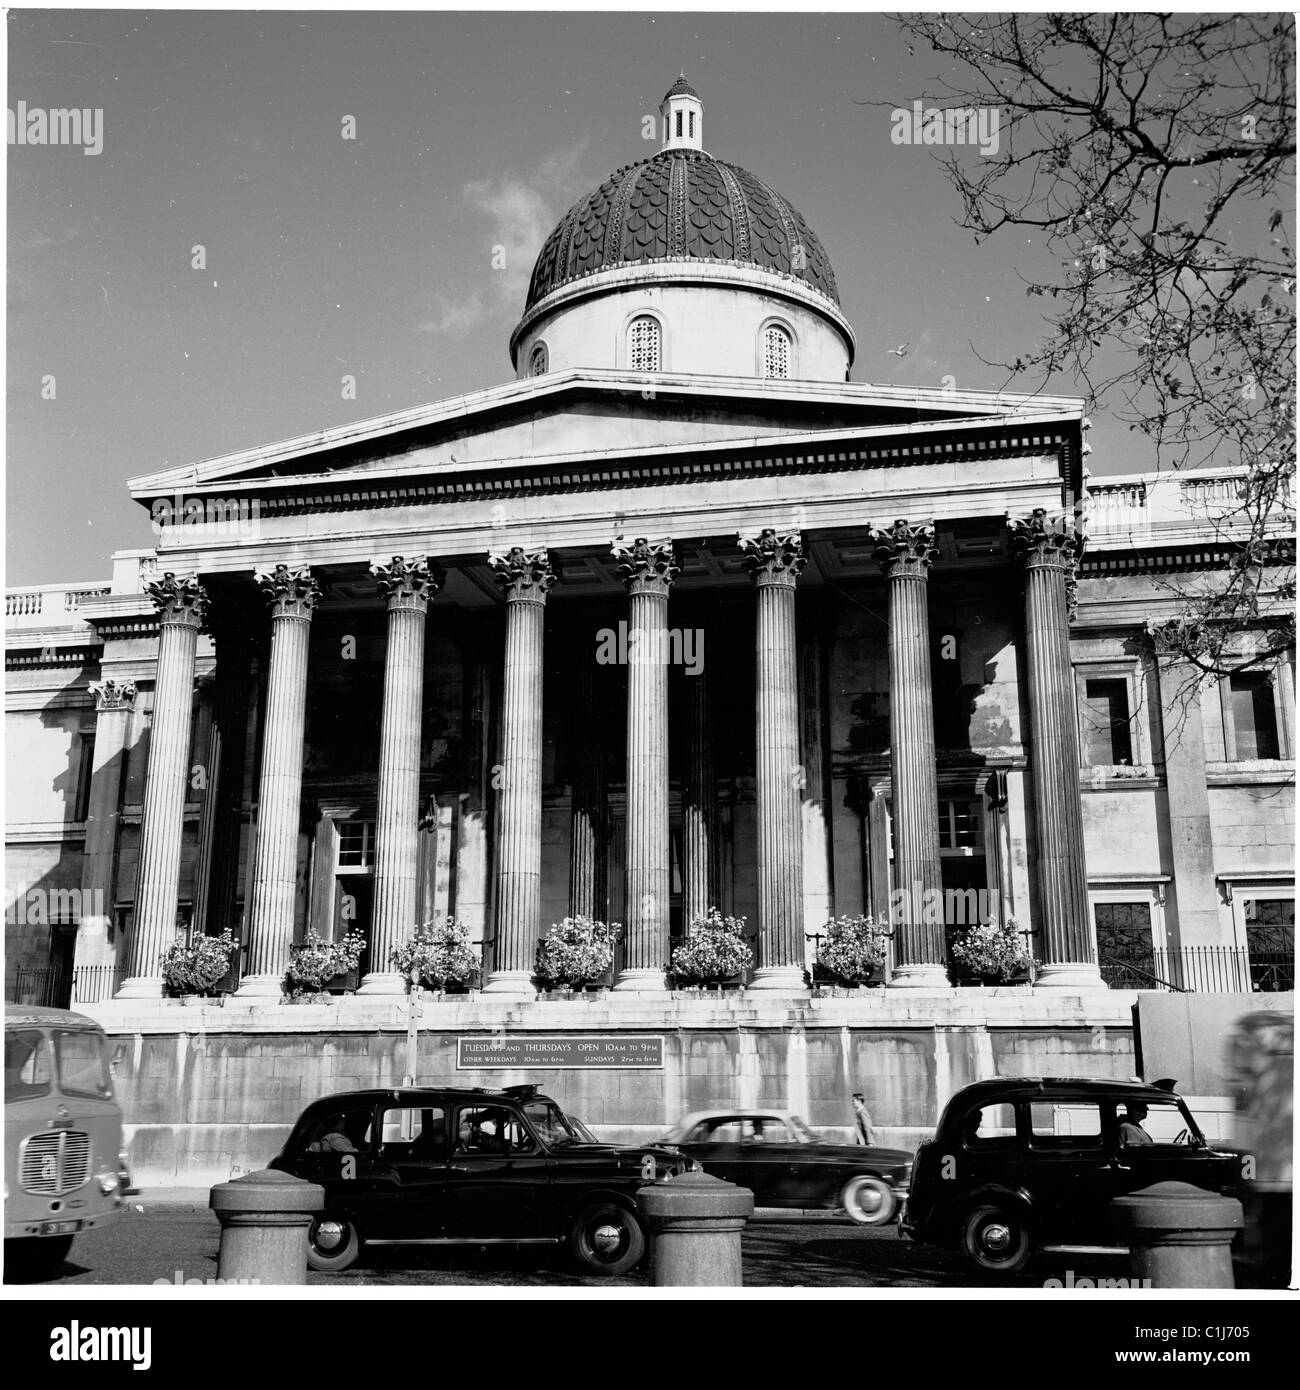 1950s. Les voitures et les taxis passent devant la grande entrée ornée de colonnes du musée d'art, la National Gallery à Trafalgar Square, Westminster, Angleterre, Royaume-Uni. Banque D'Images